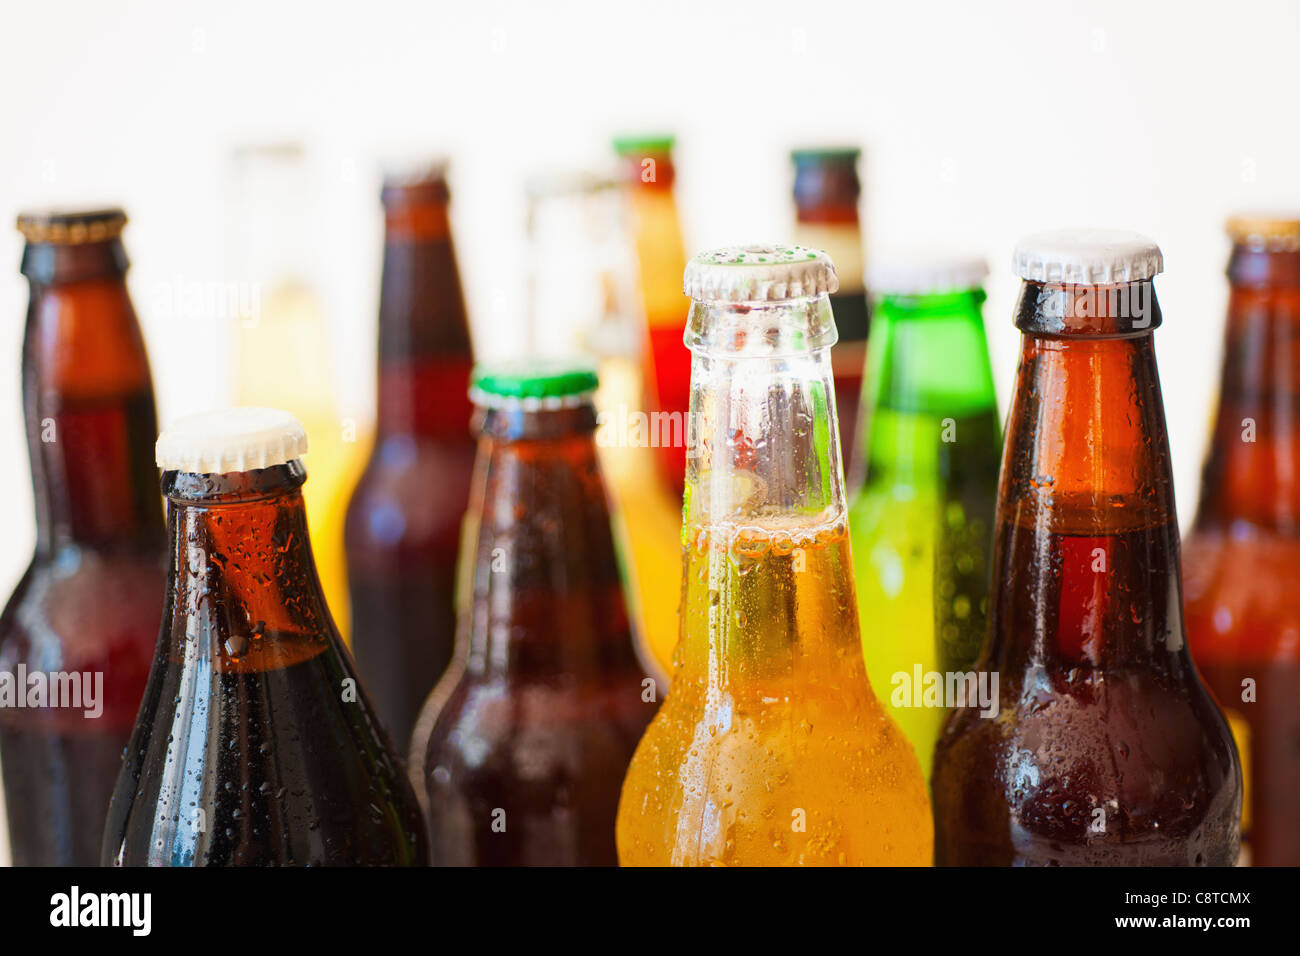 Studio shot of various beer bottles Stock Photo